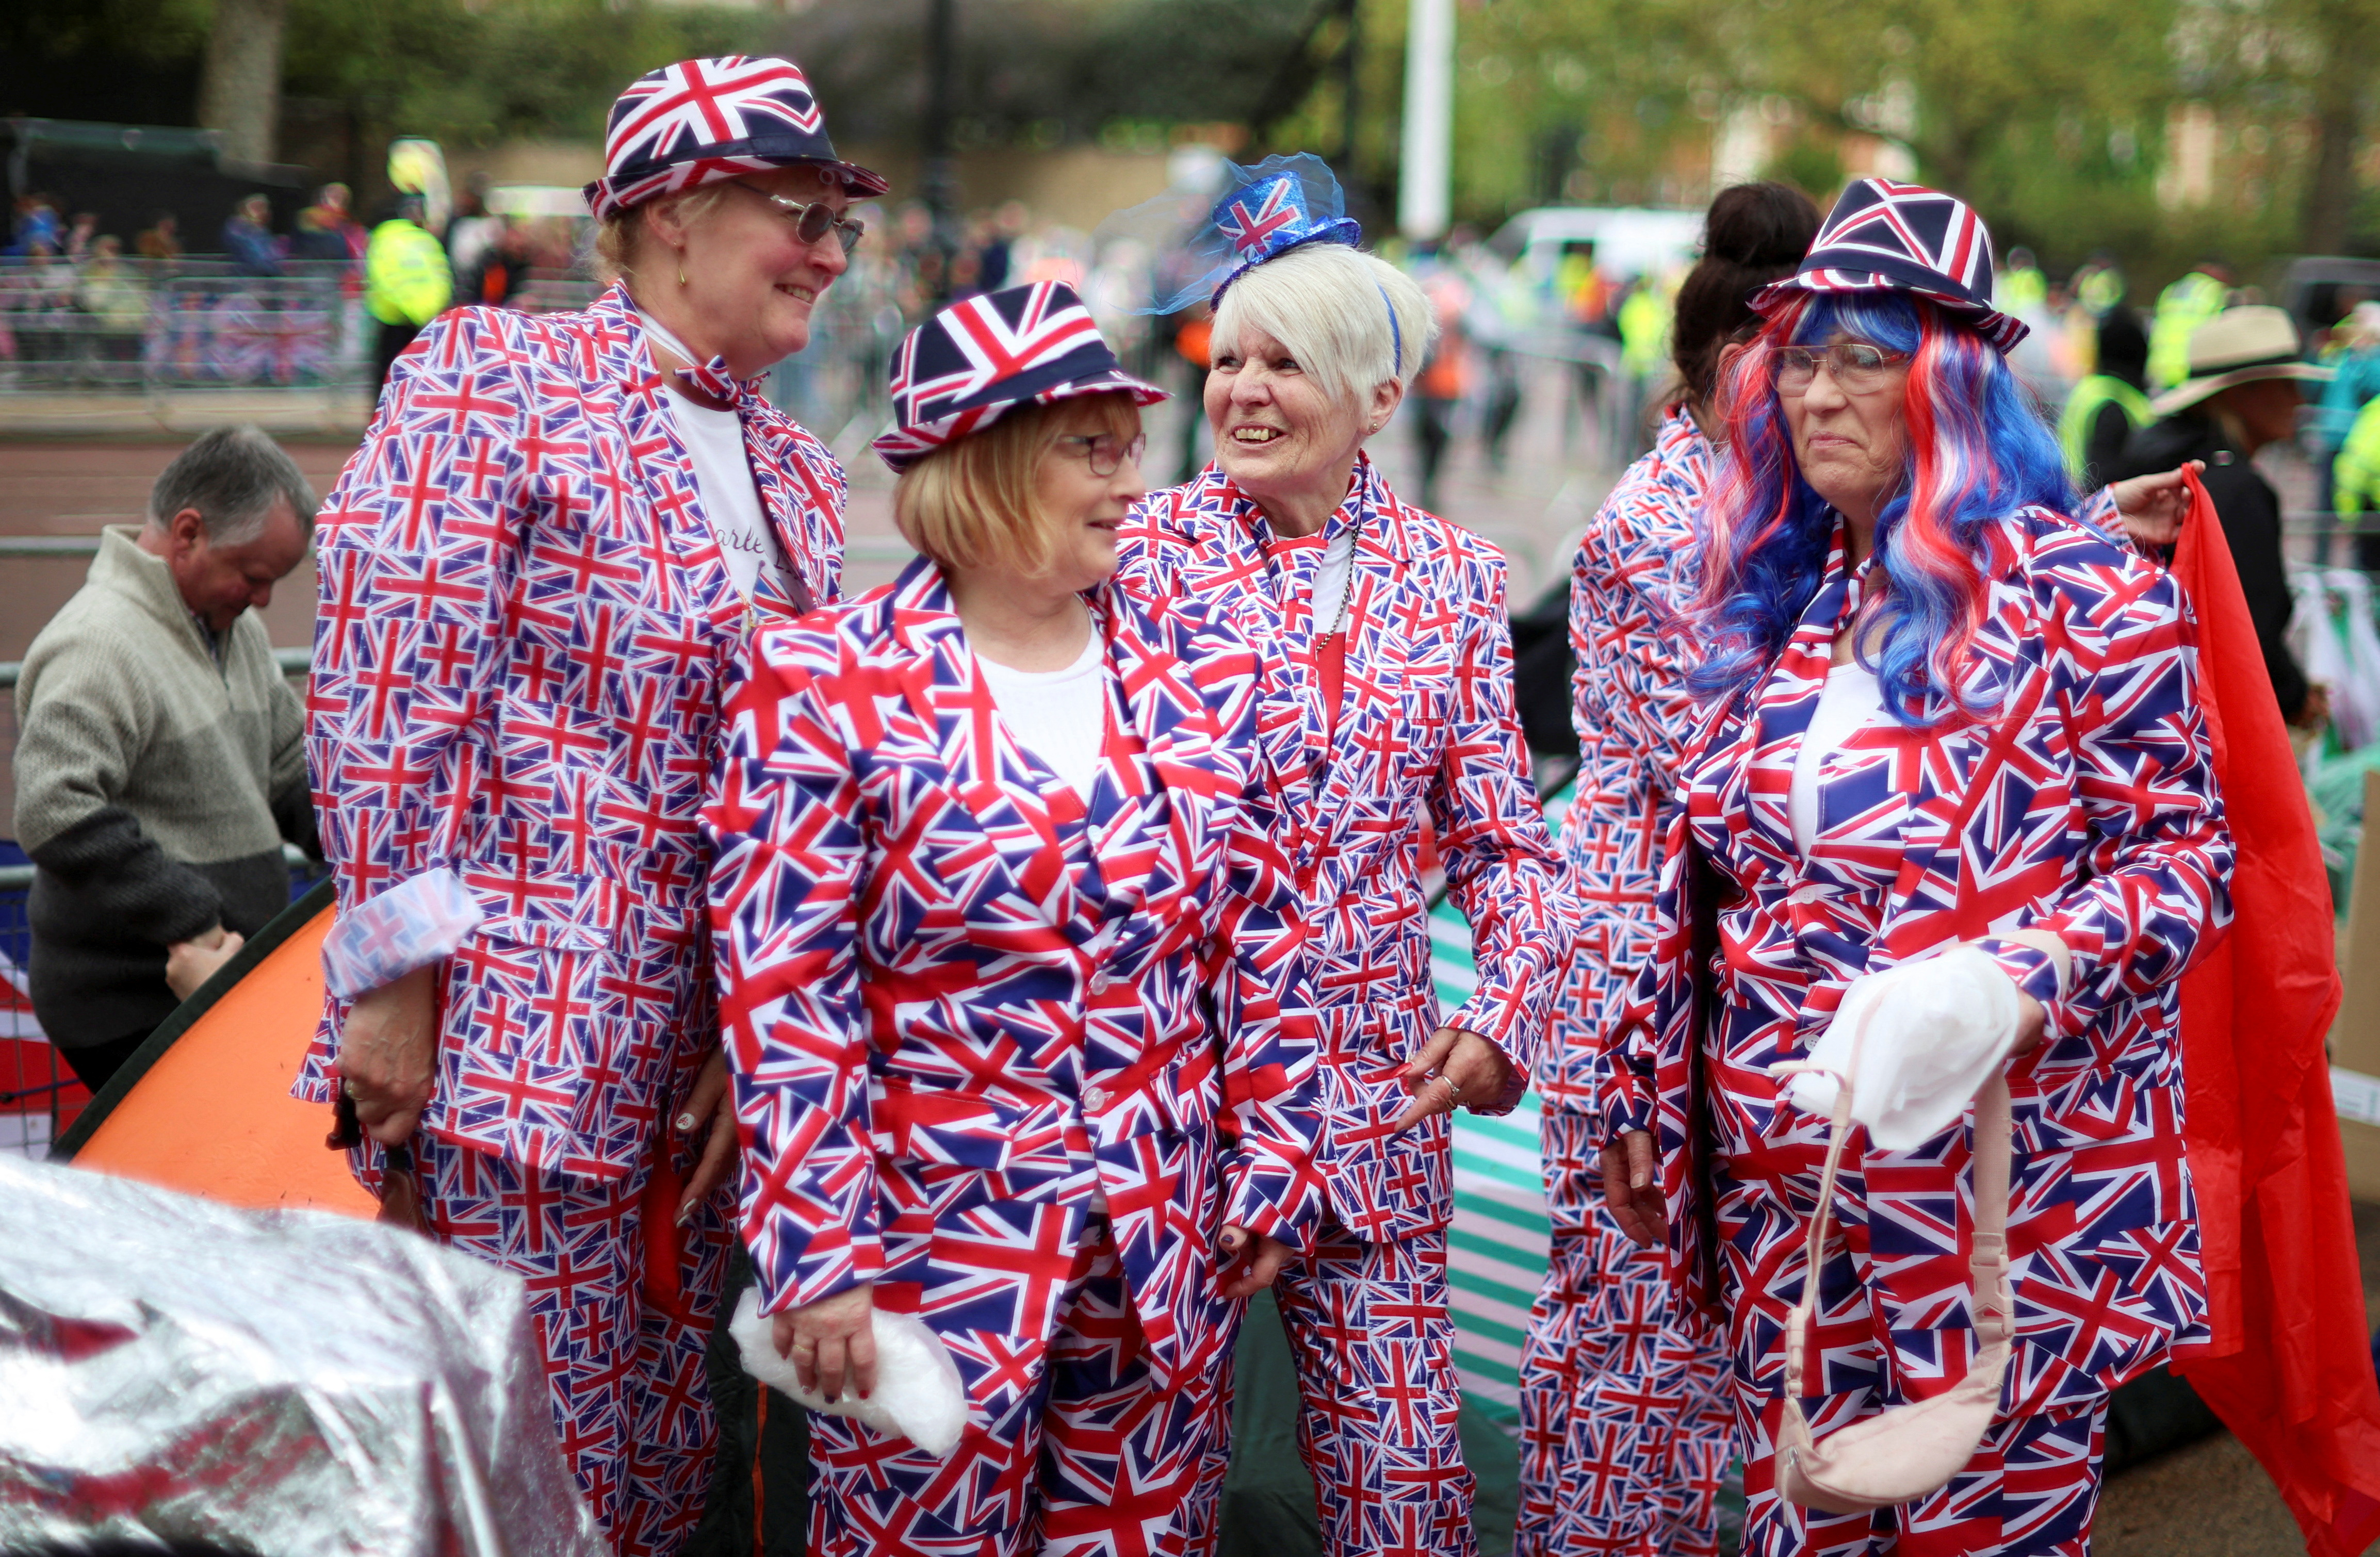 Con trajes de la bandera británica un grupo de ciudadanos se reunía frente al Palacio de Buckingham antes de la coronación del rey Carlos y Camila, reina consorte de Gran Bretaña, en Londres., May 5, 2023. REUTERS/Phil Noble    